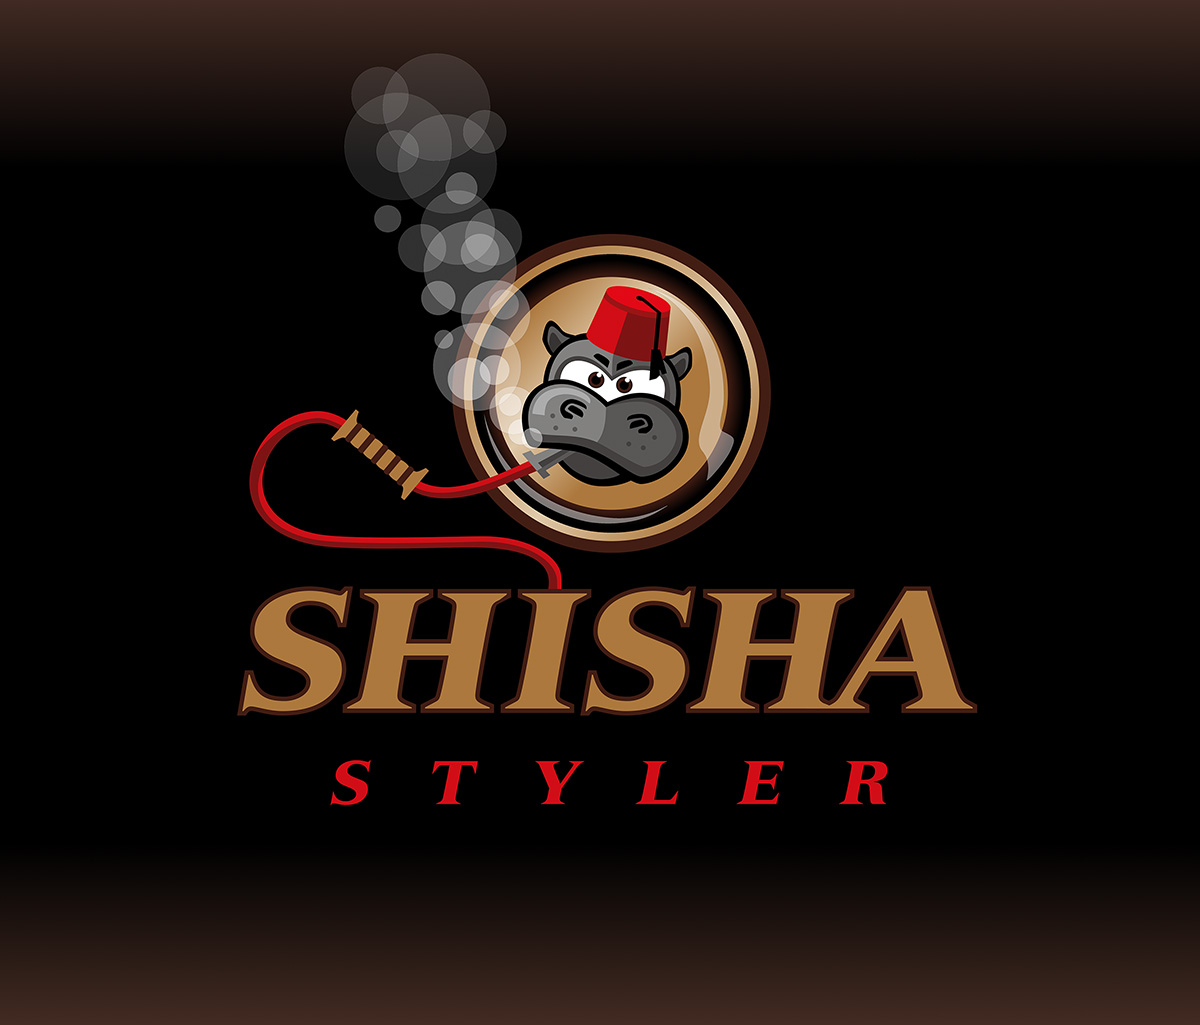 Logo shisha styler - In einem Kreis stehender Nilpferdkopf mit Fez raucht Shisha.